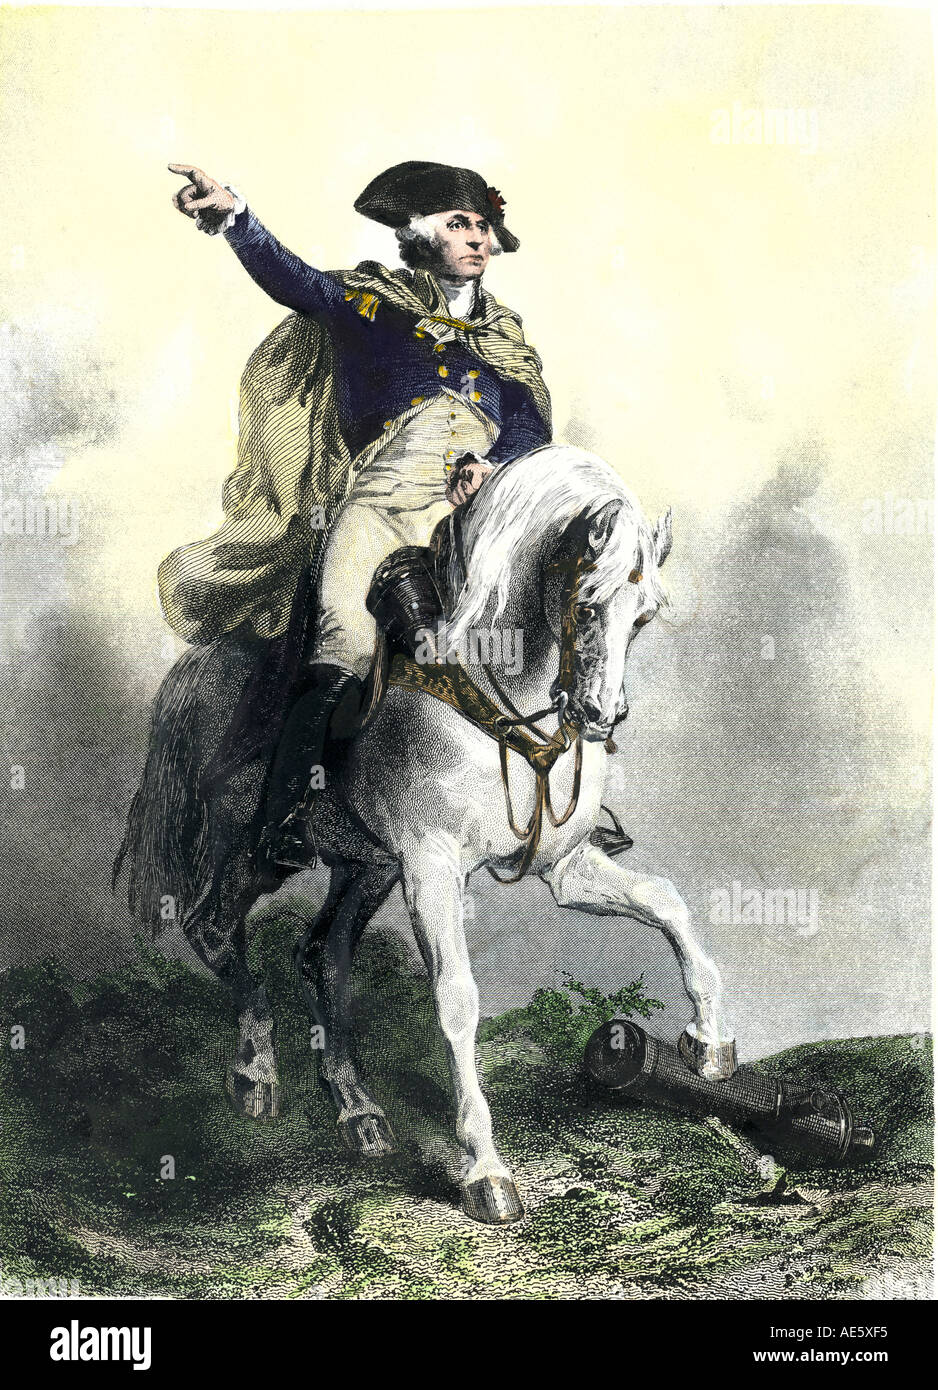 El General George Washington en un caballo de batalla en la Revolución Americana. Mano de color acero grabado Foto de stock